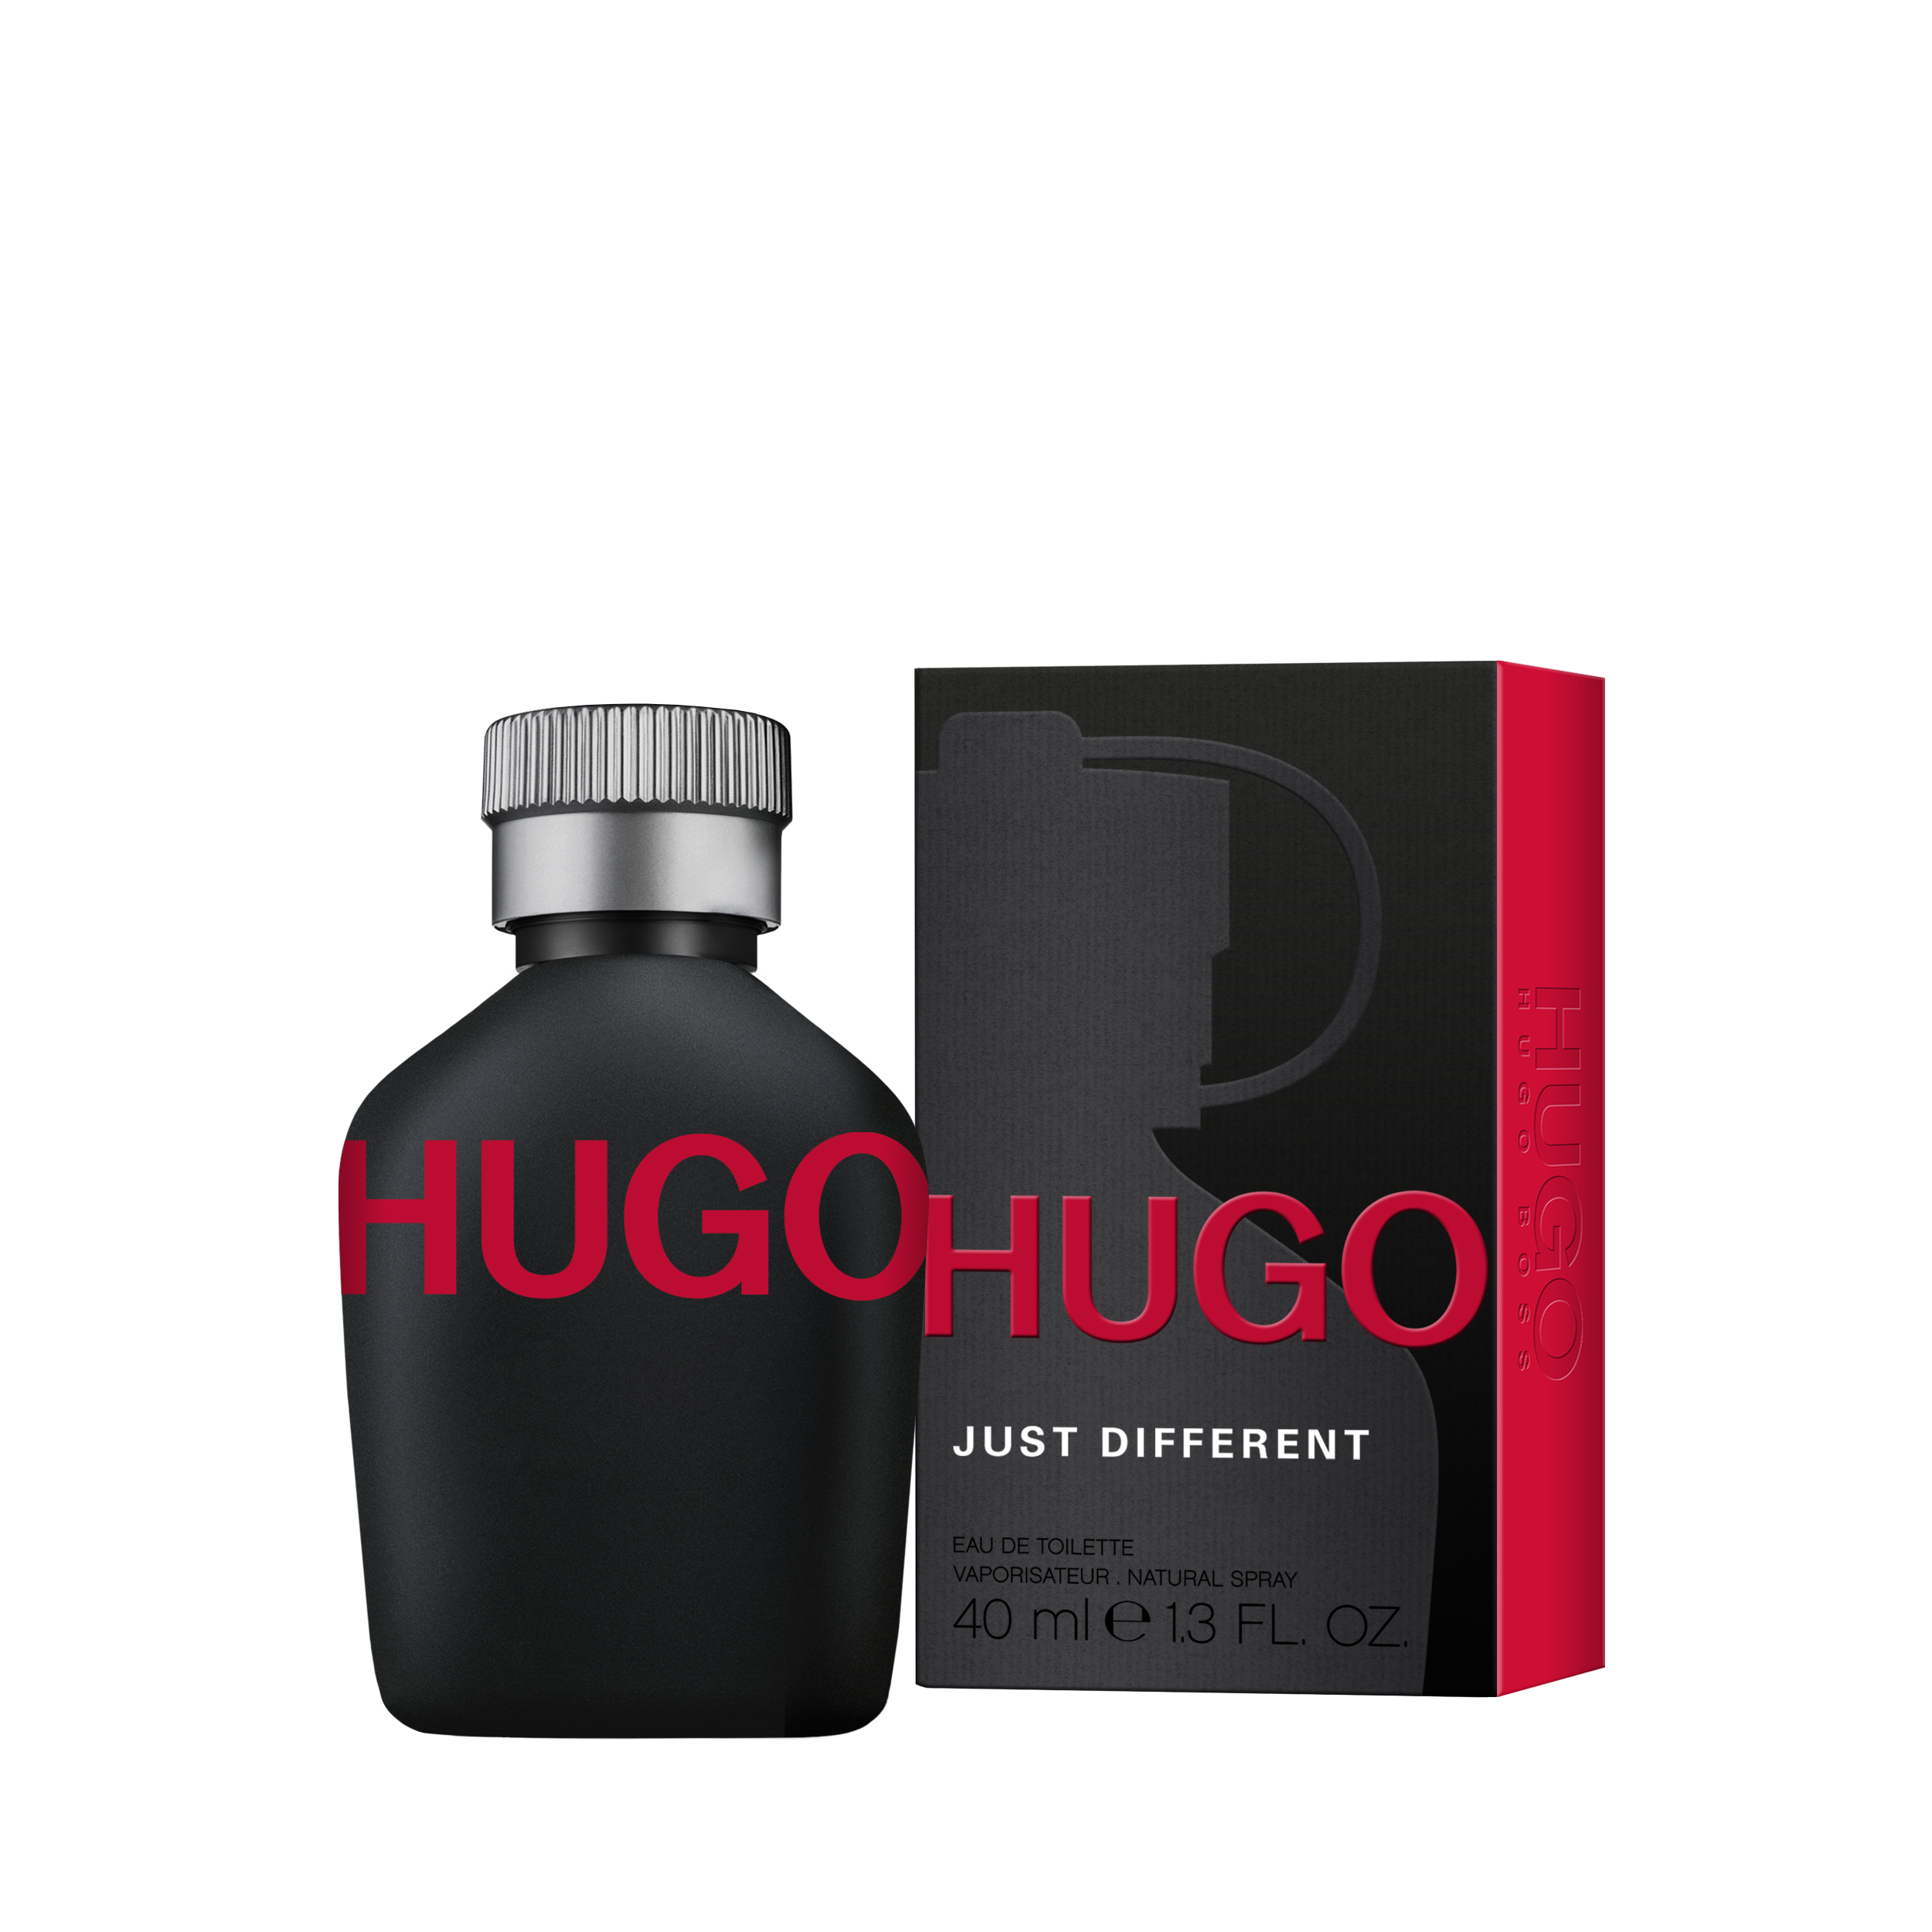 Hugo Just Different Eau De Toilette 40 ml